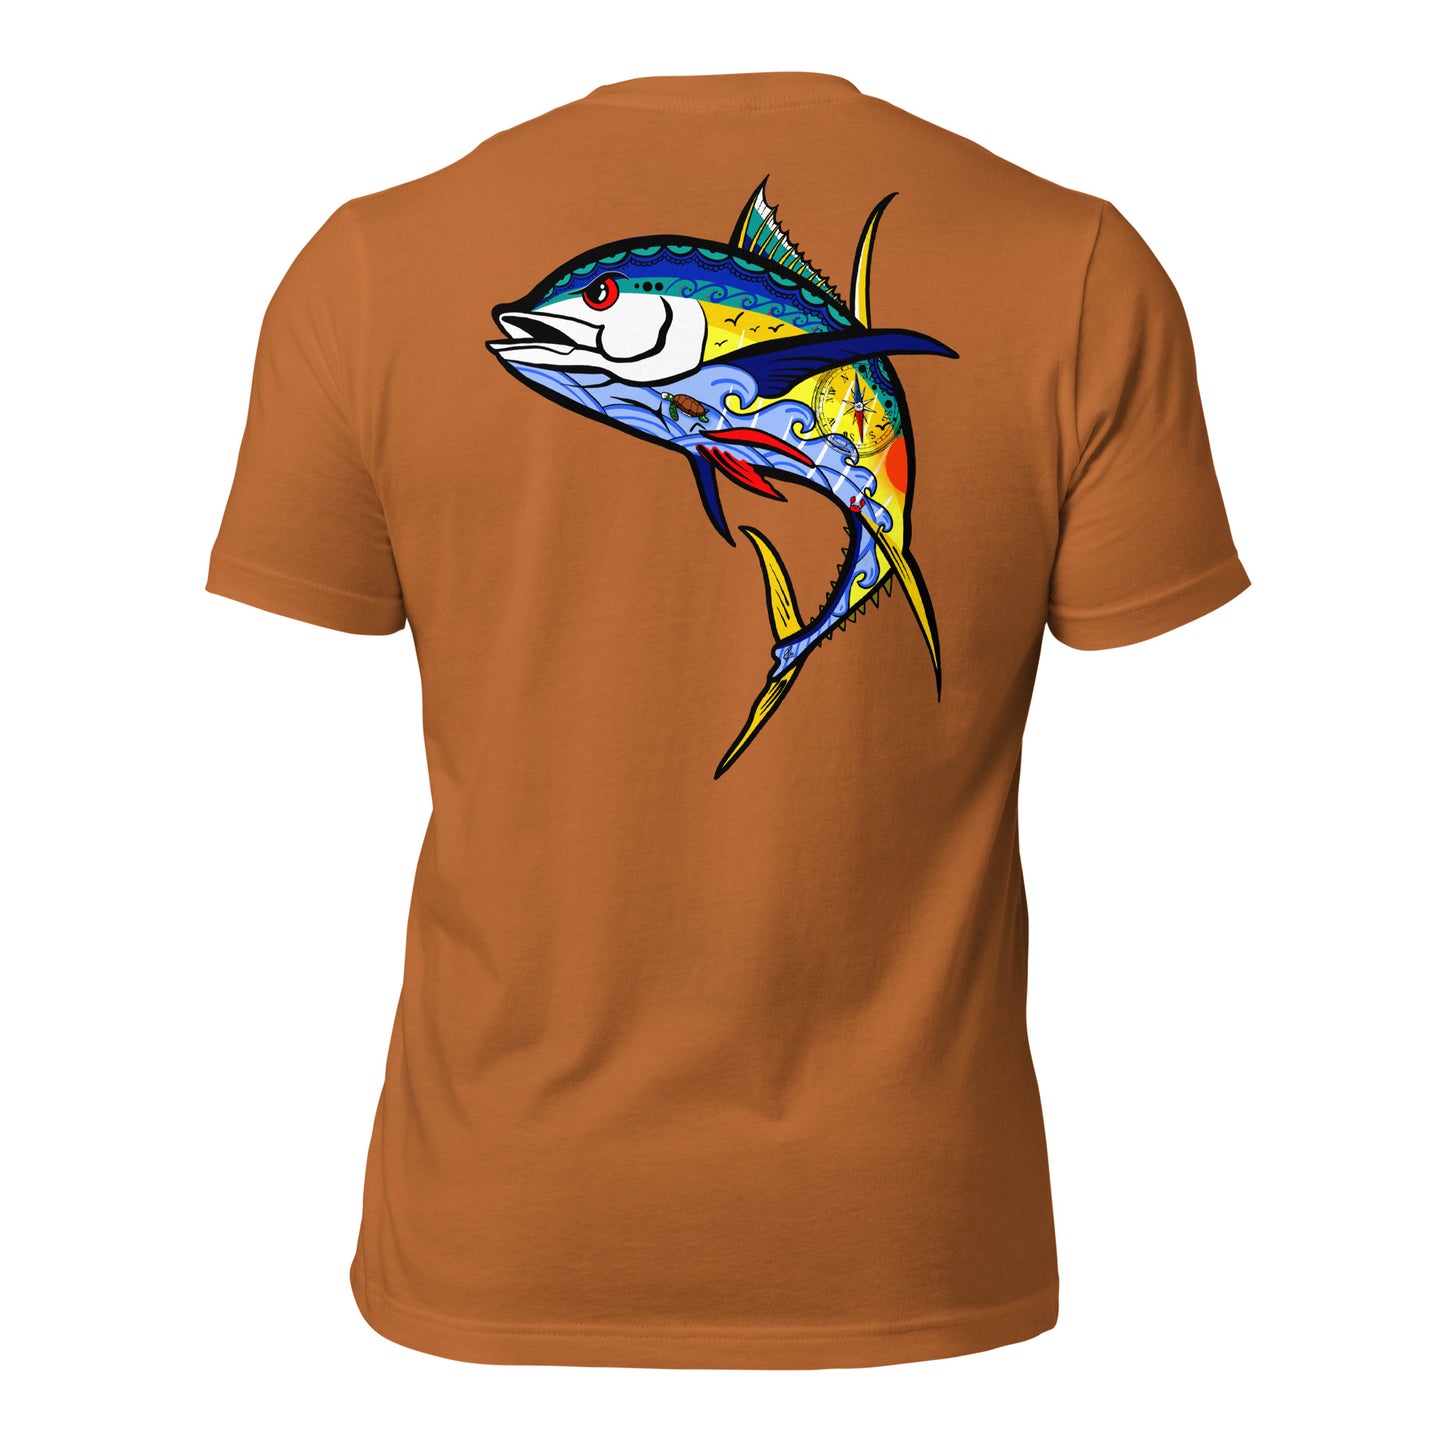 Mean Tuna - Unisex t-shirt